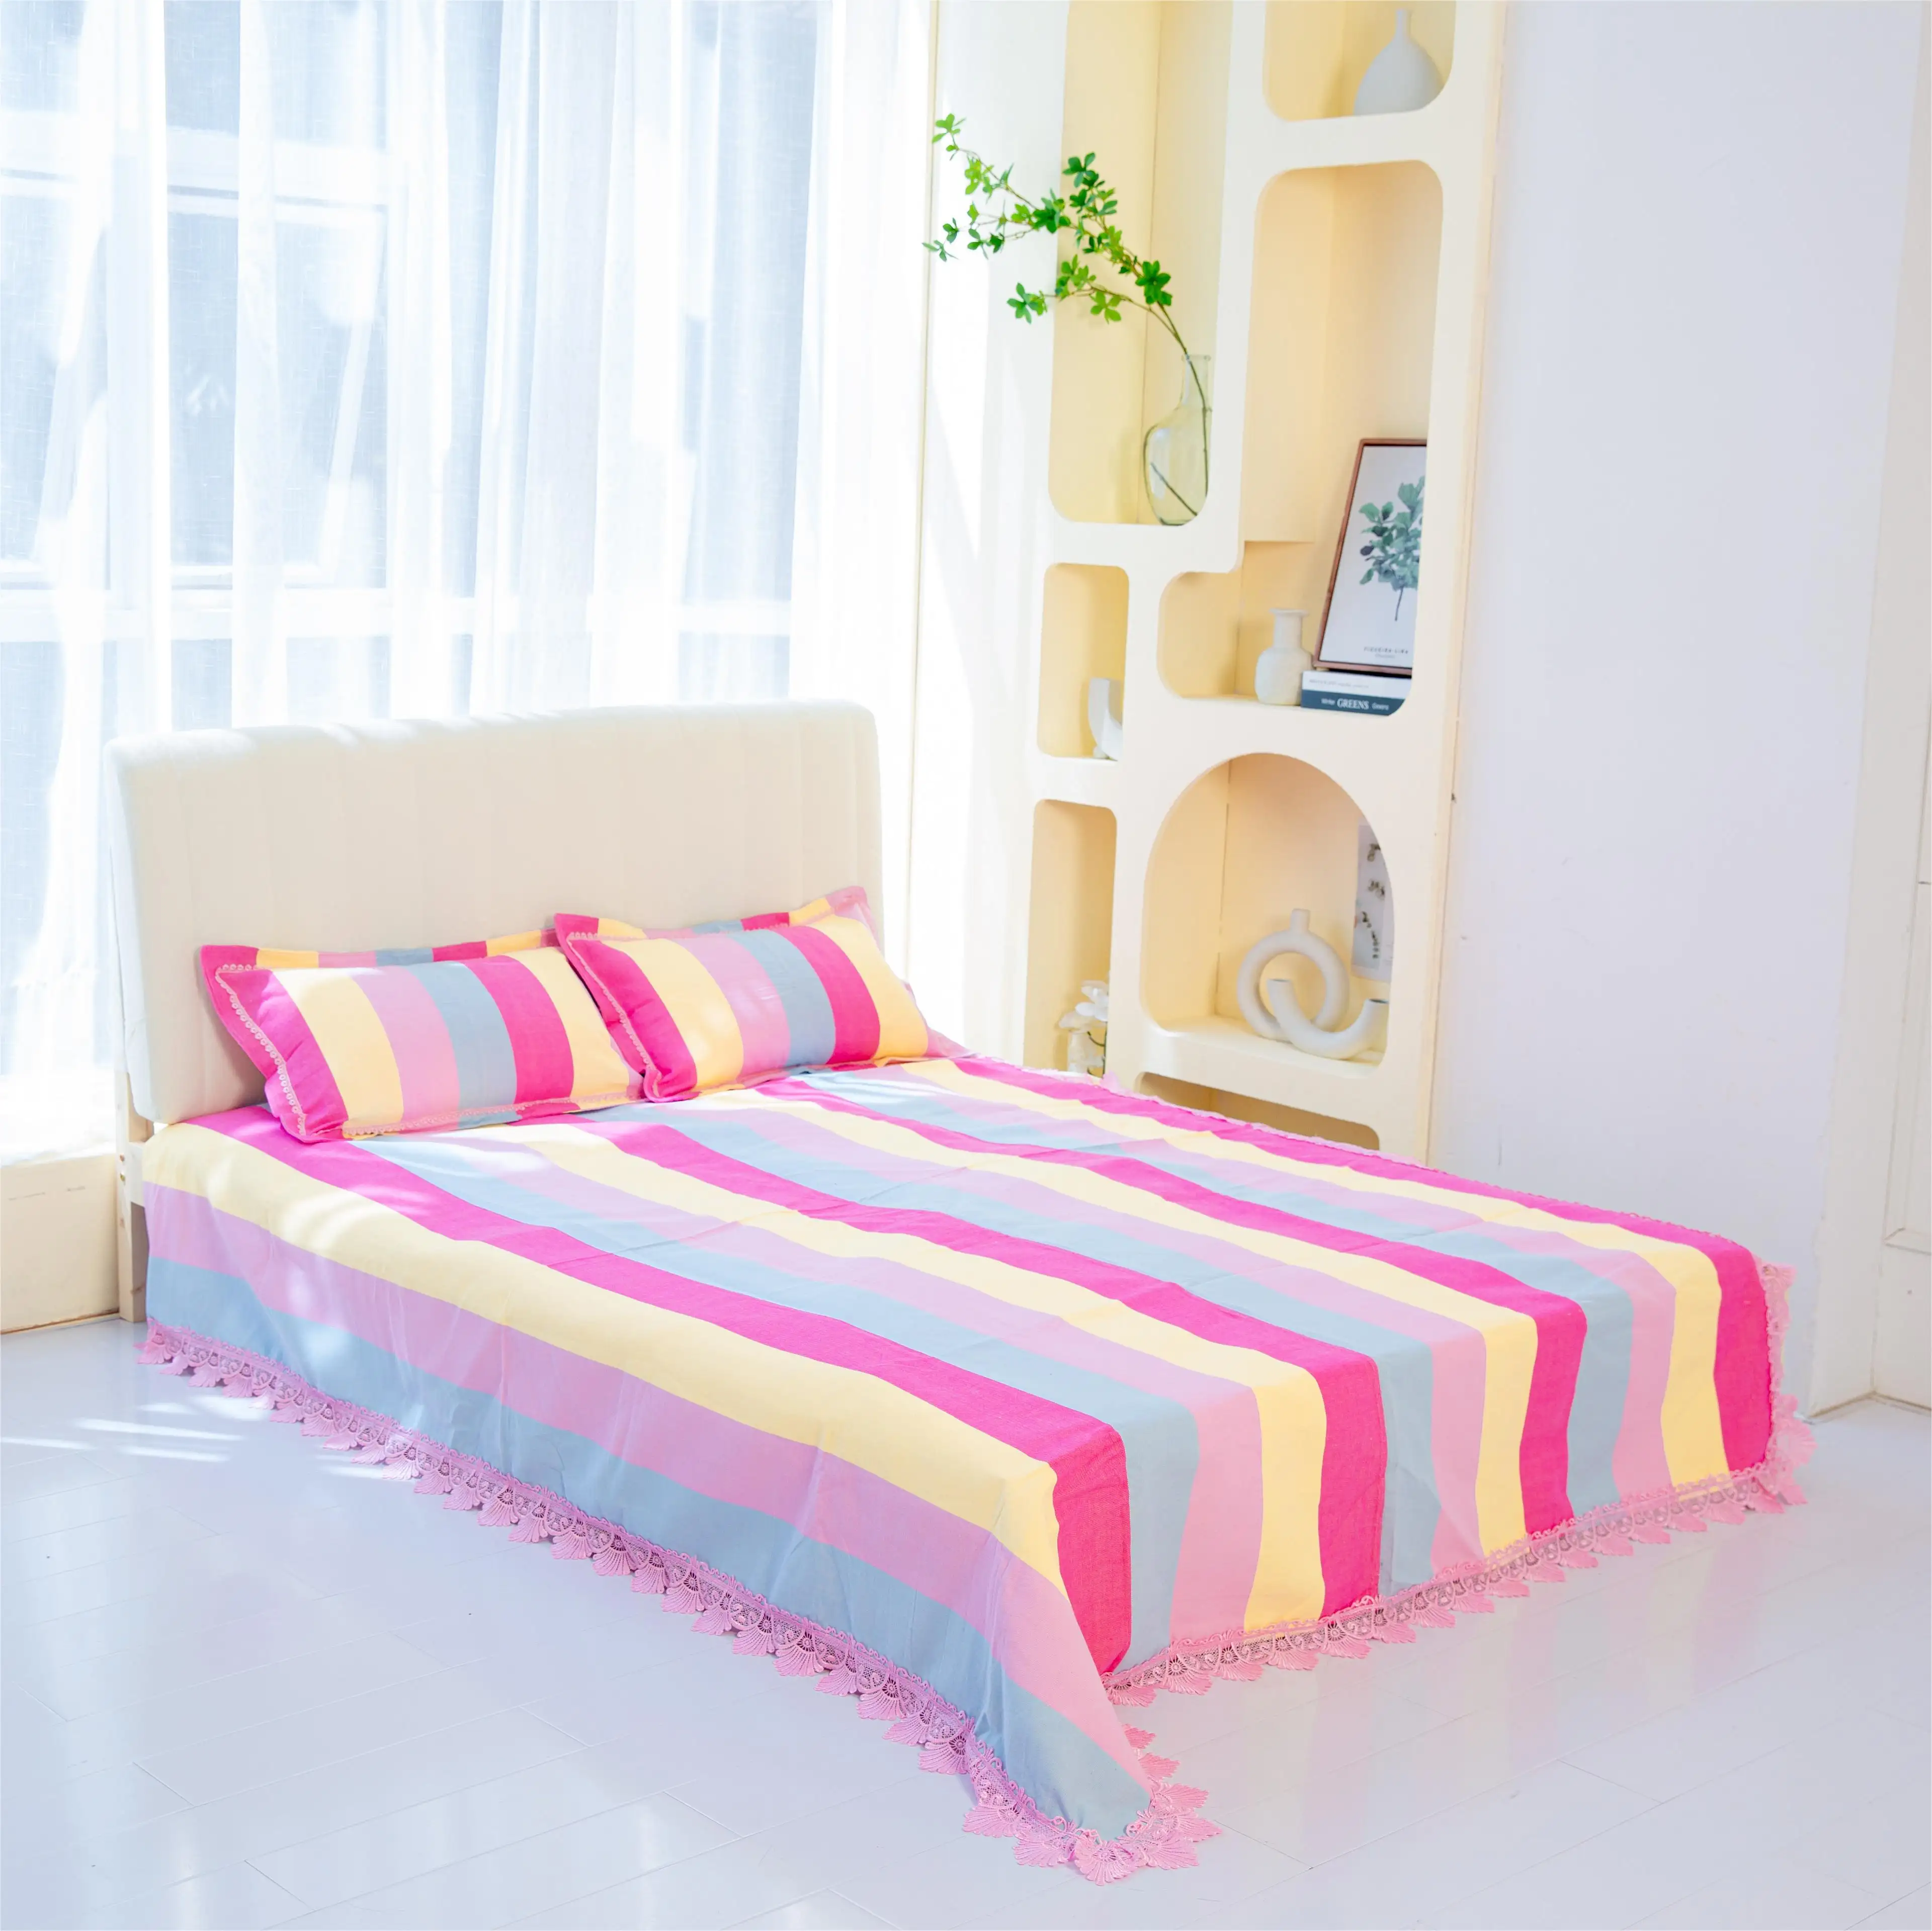 WINATURE all'ingrosso lenzuola morbide Vintage a righe Color arcobaleno Set di biancheria da letto Queen Size unico